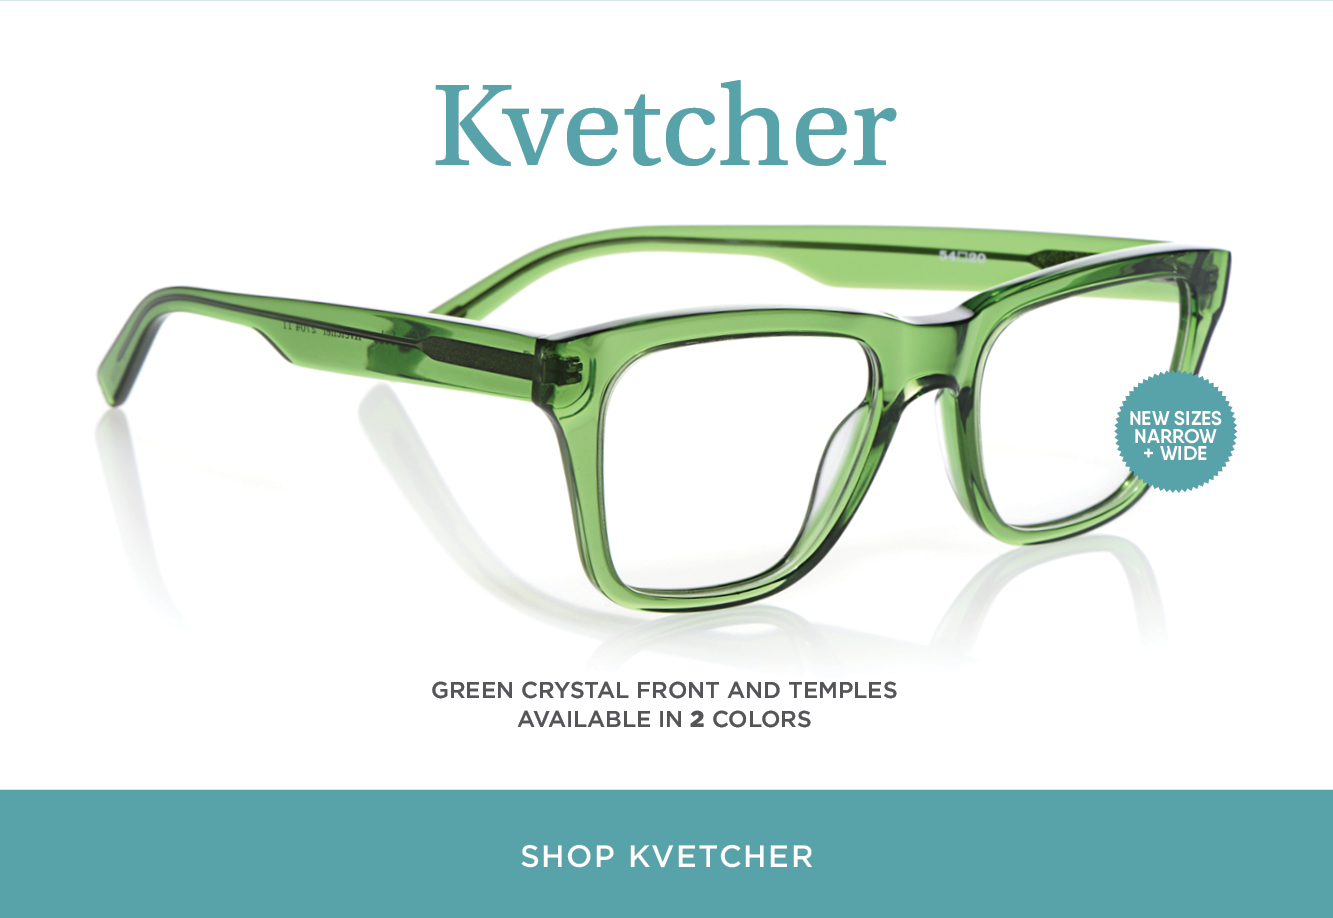 Shop Kvetcher